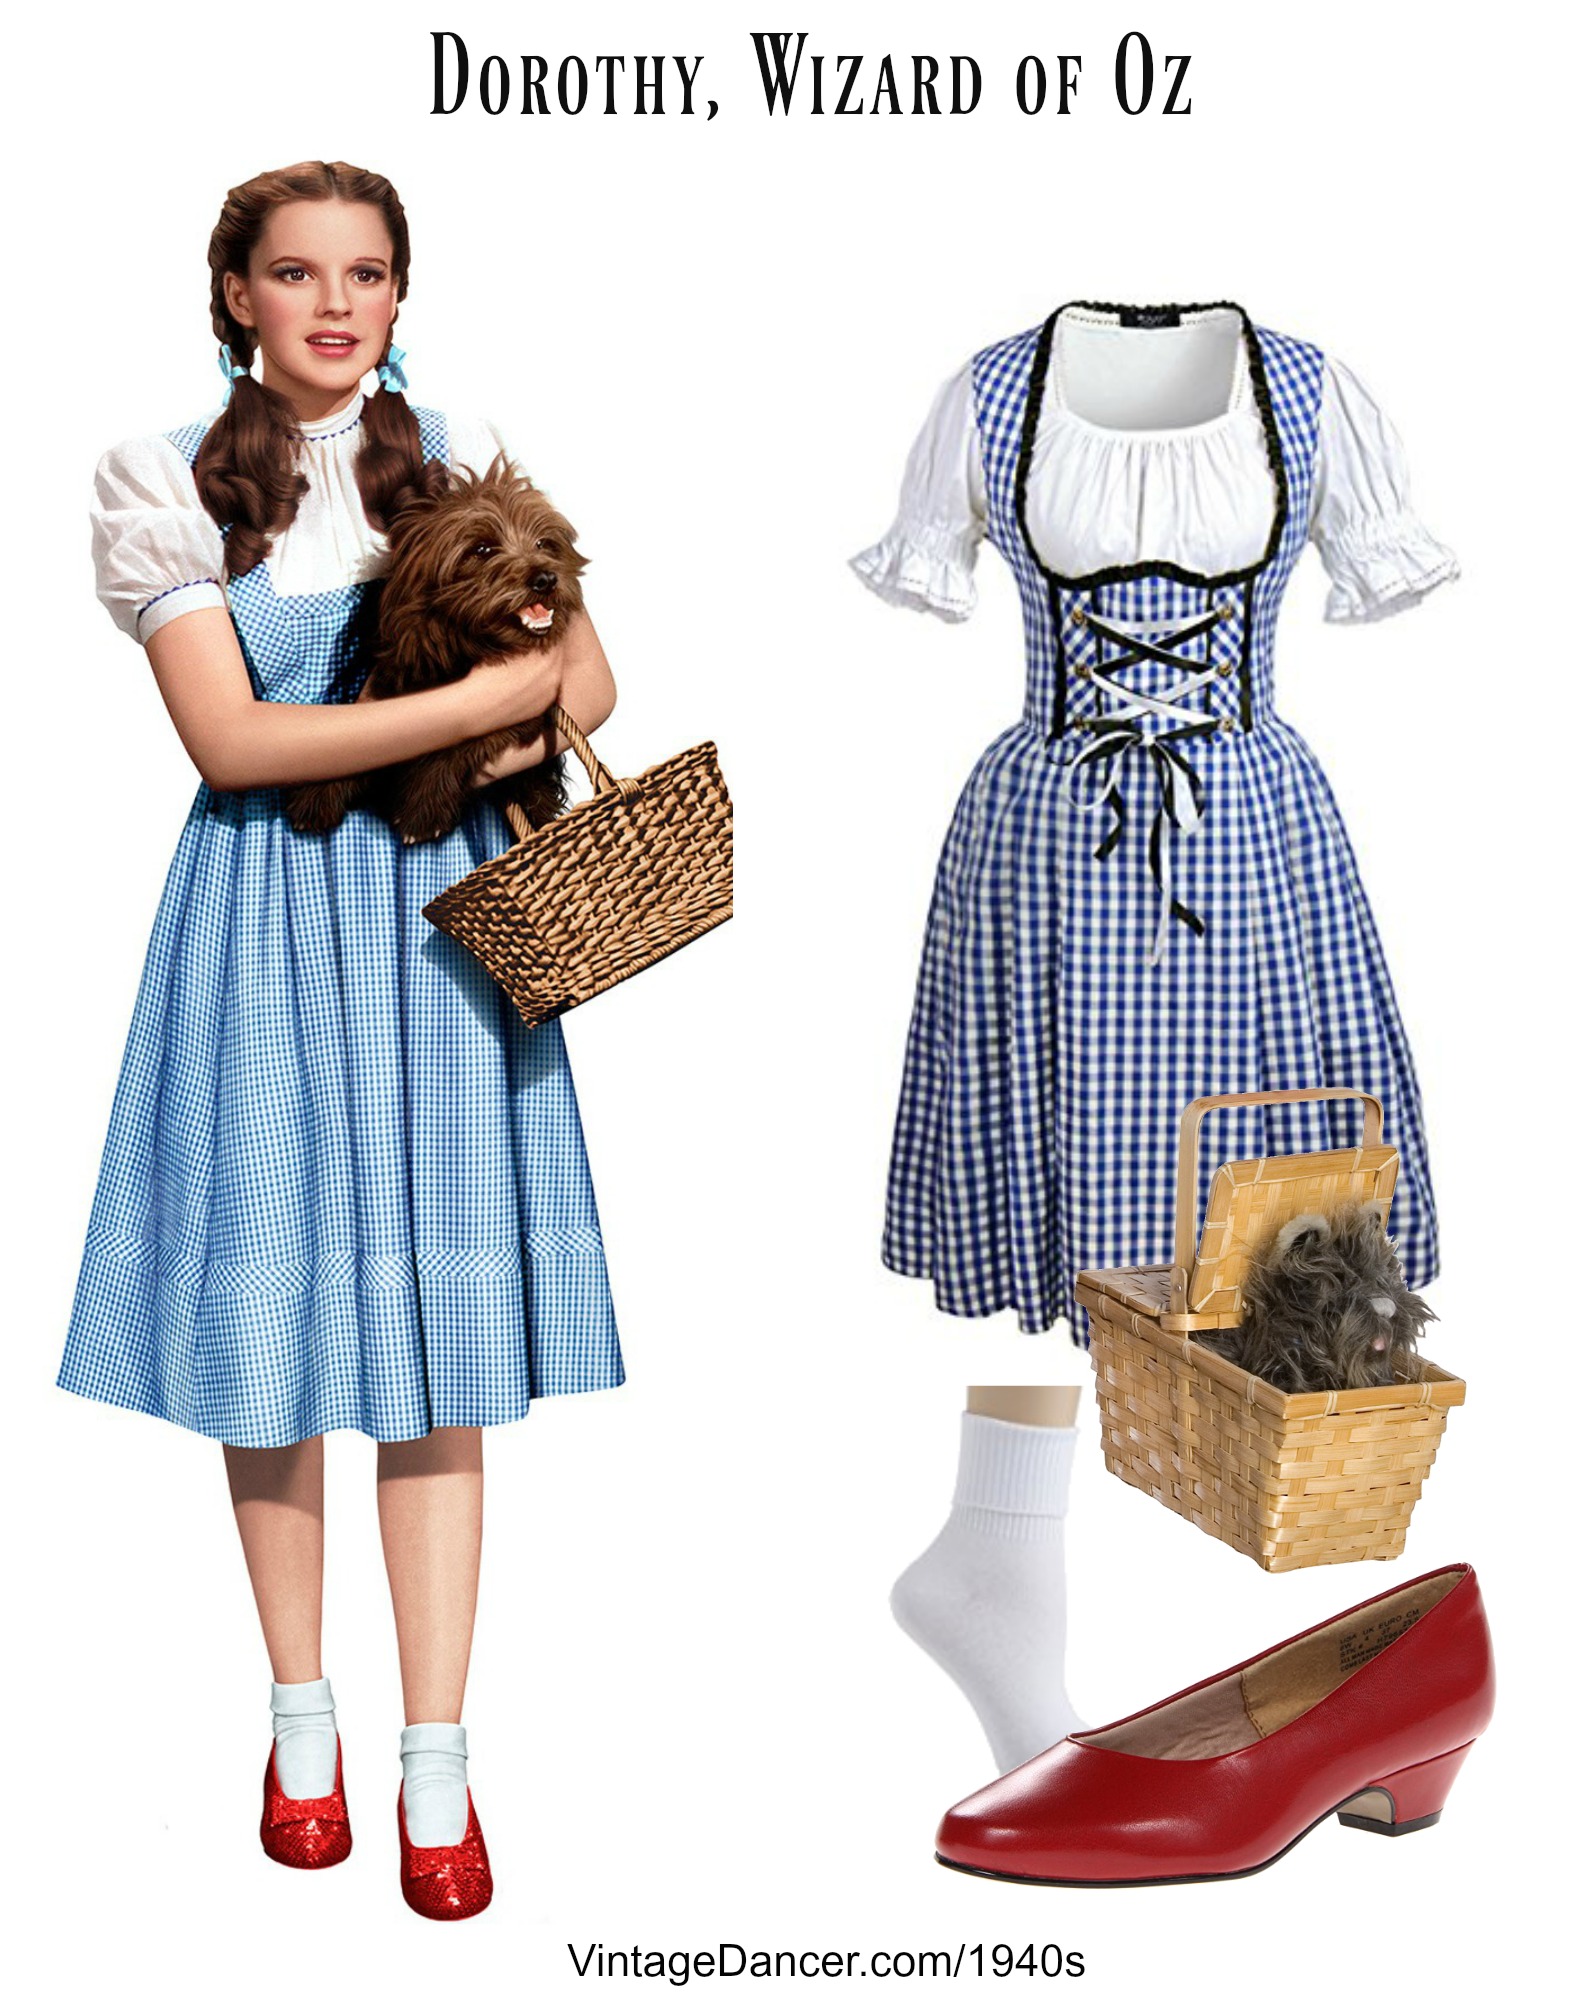 1940s Dorothy Costume.